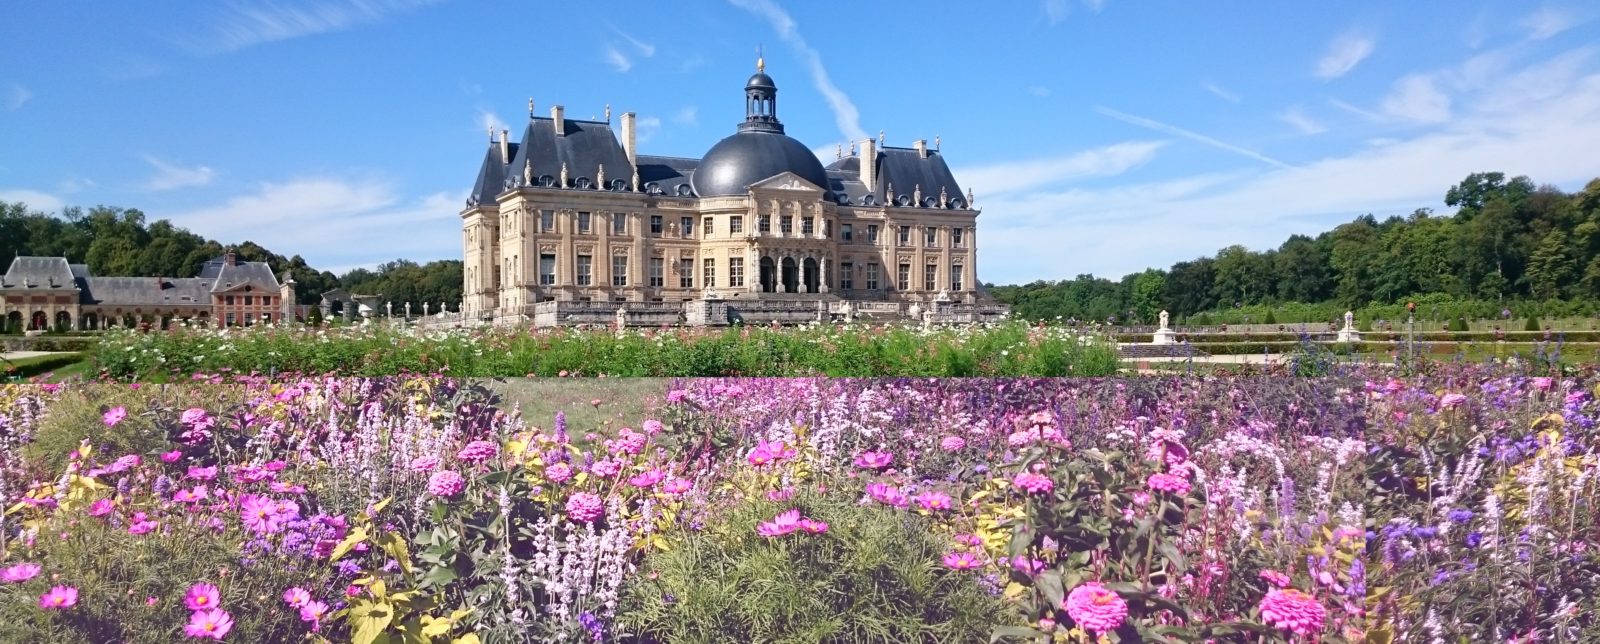 Château de Vaux-le-Vicomte 2019 